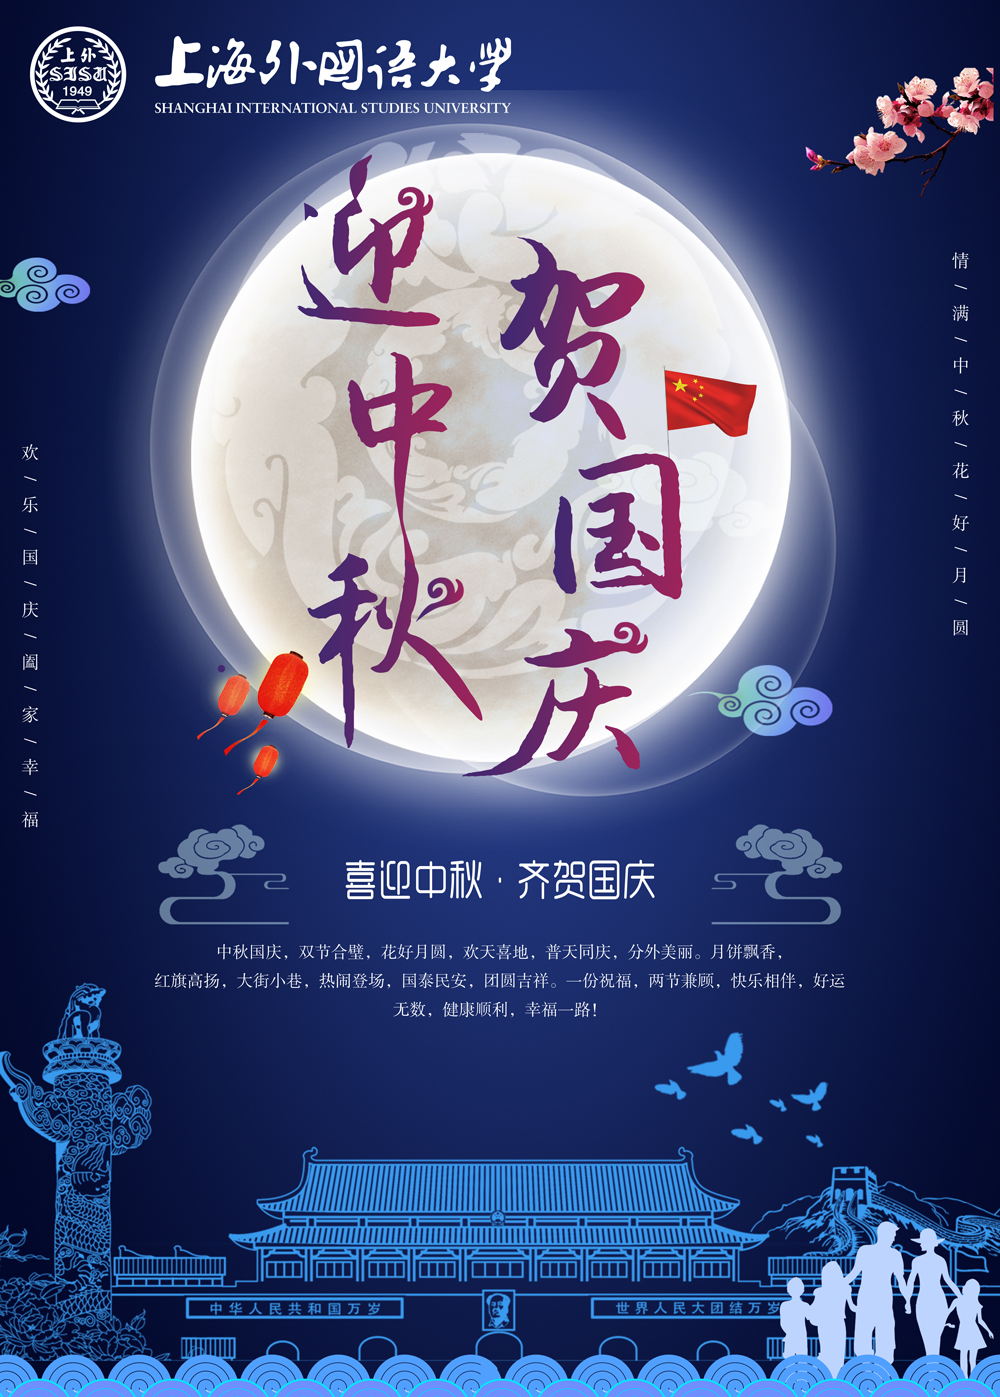 上海外国语大学海外合作迎中秋贺国庆-祝愿花好月圆,欢天喜地!